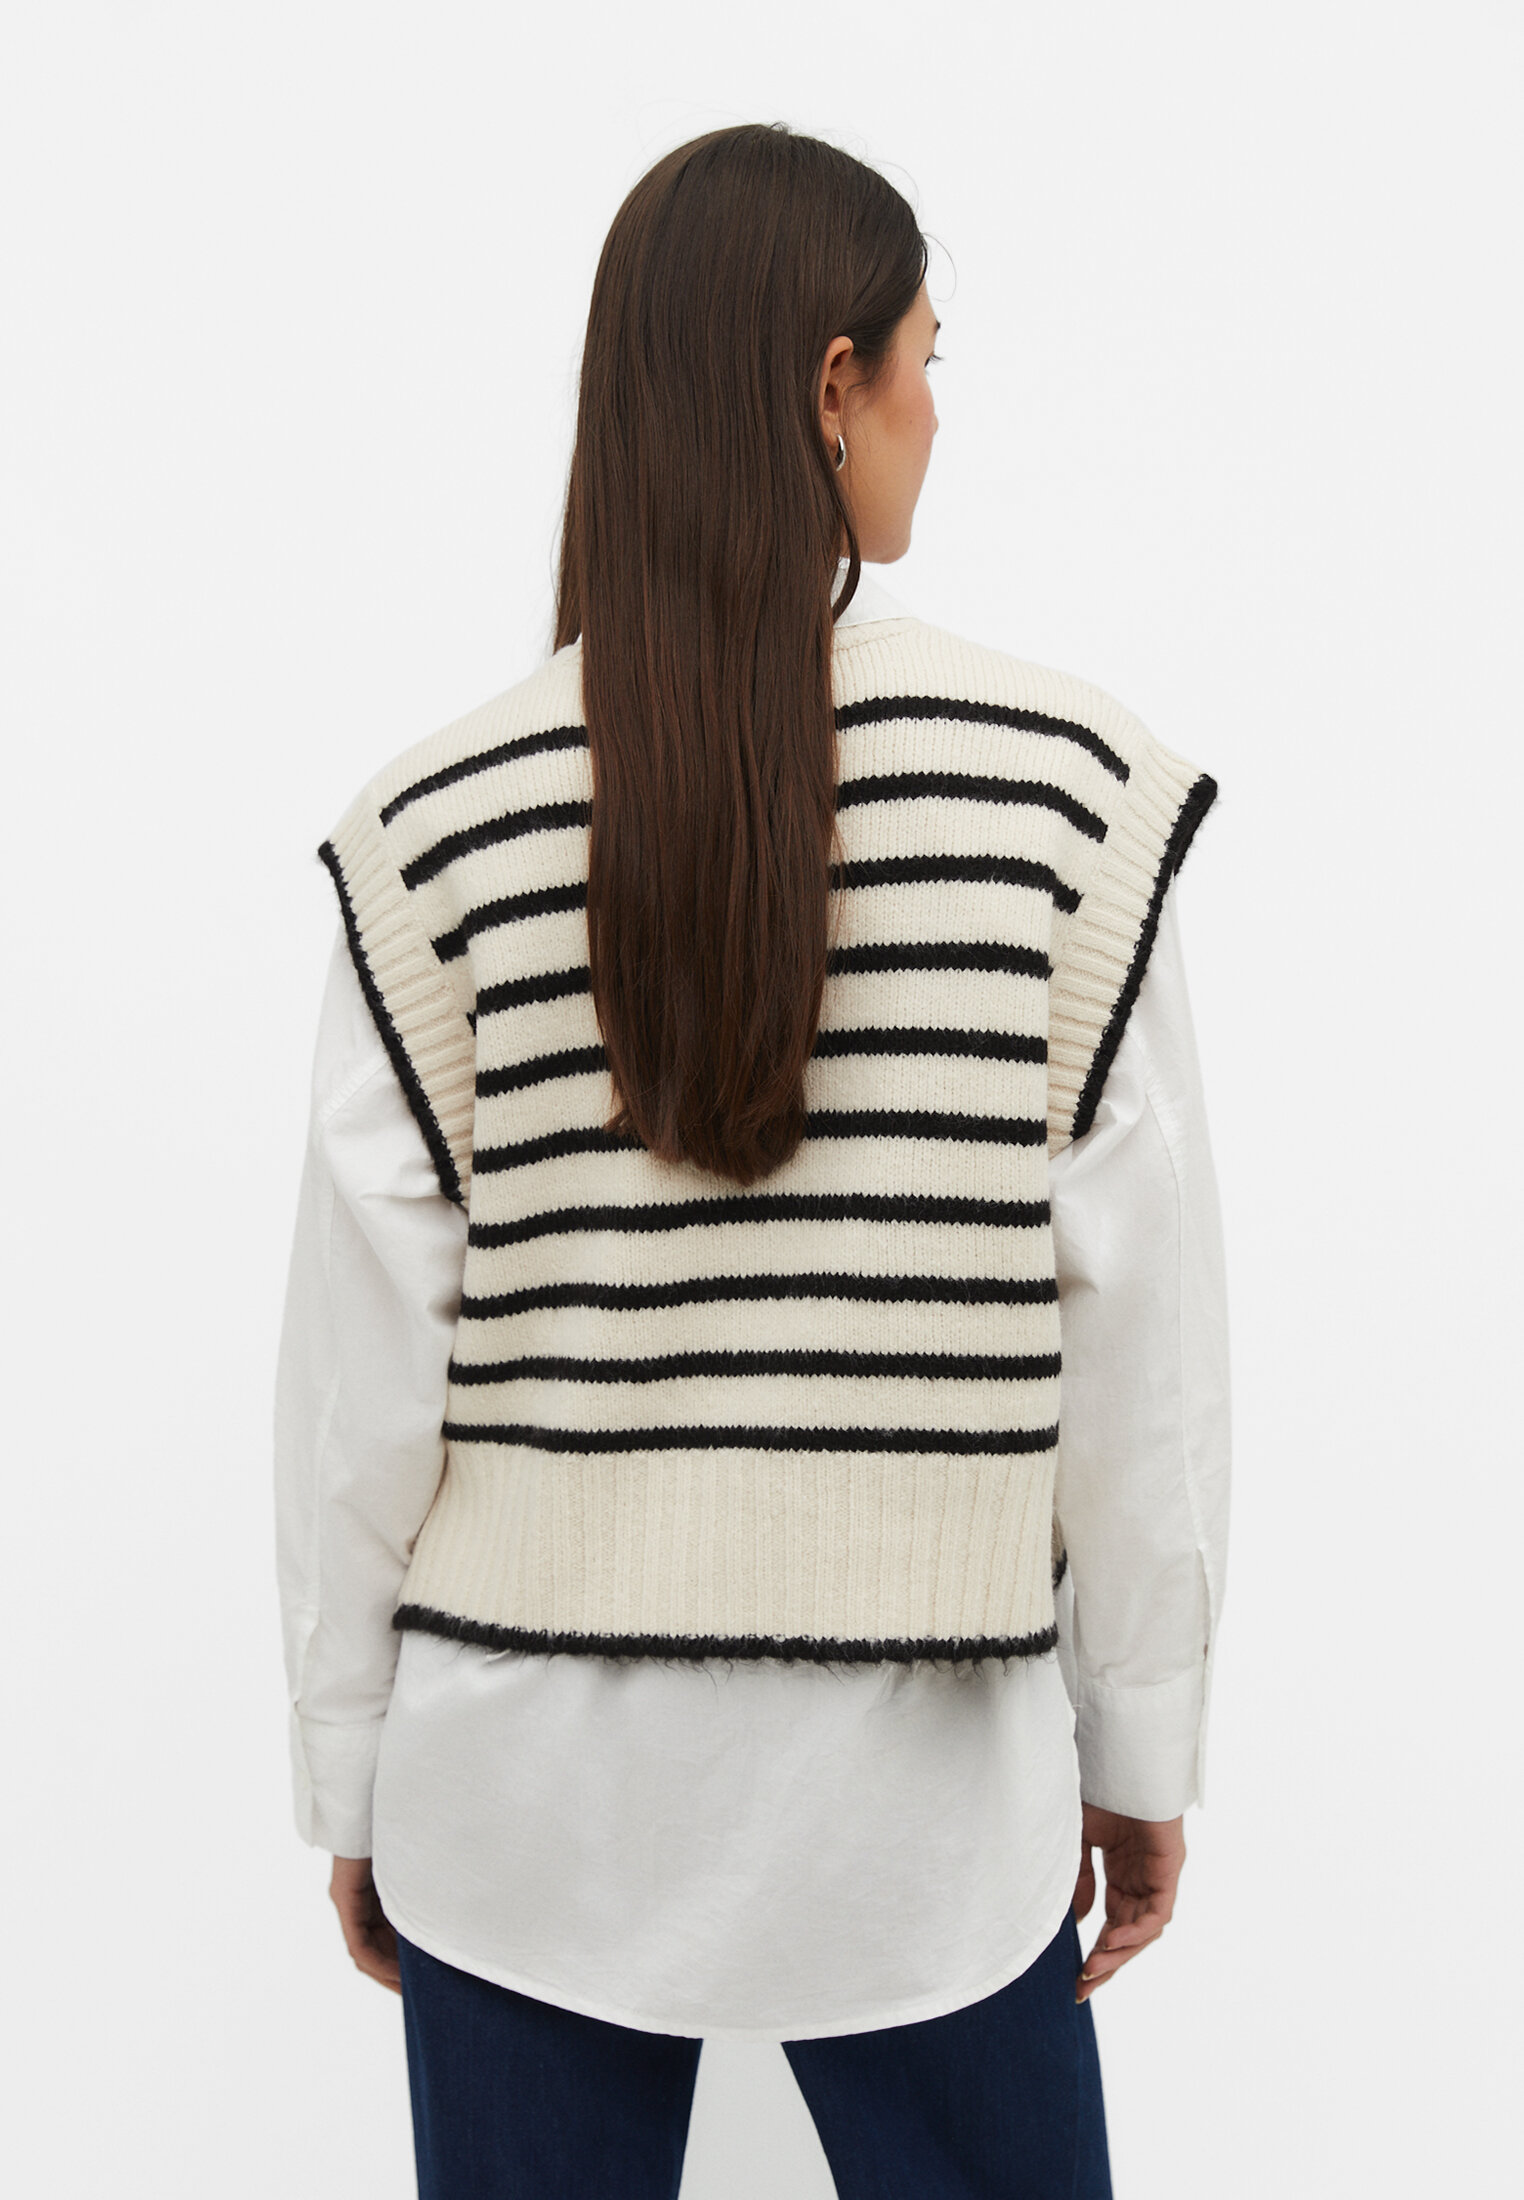 Striped knit vest